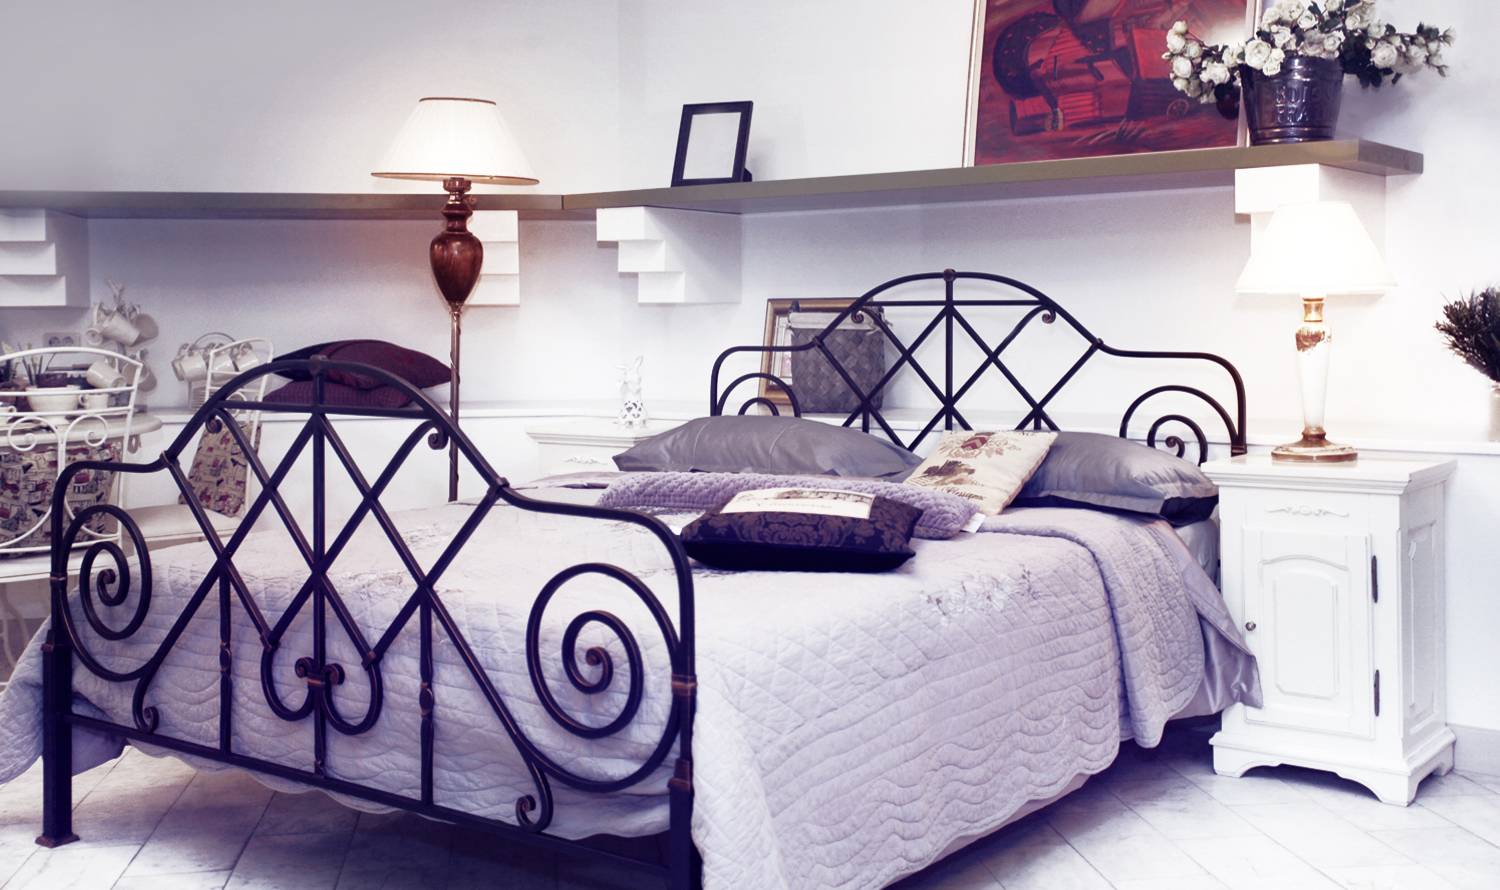 Кованые кровати в интерьере - фото необычного дизайна кованных кроватей